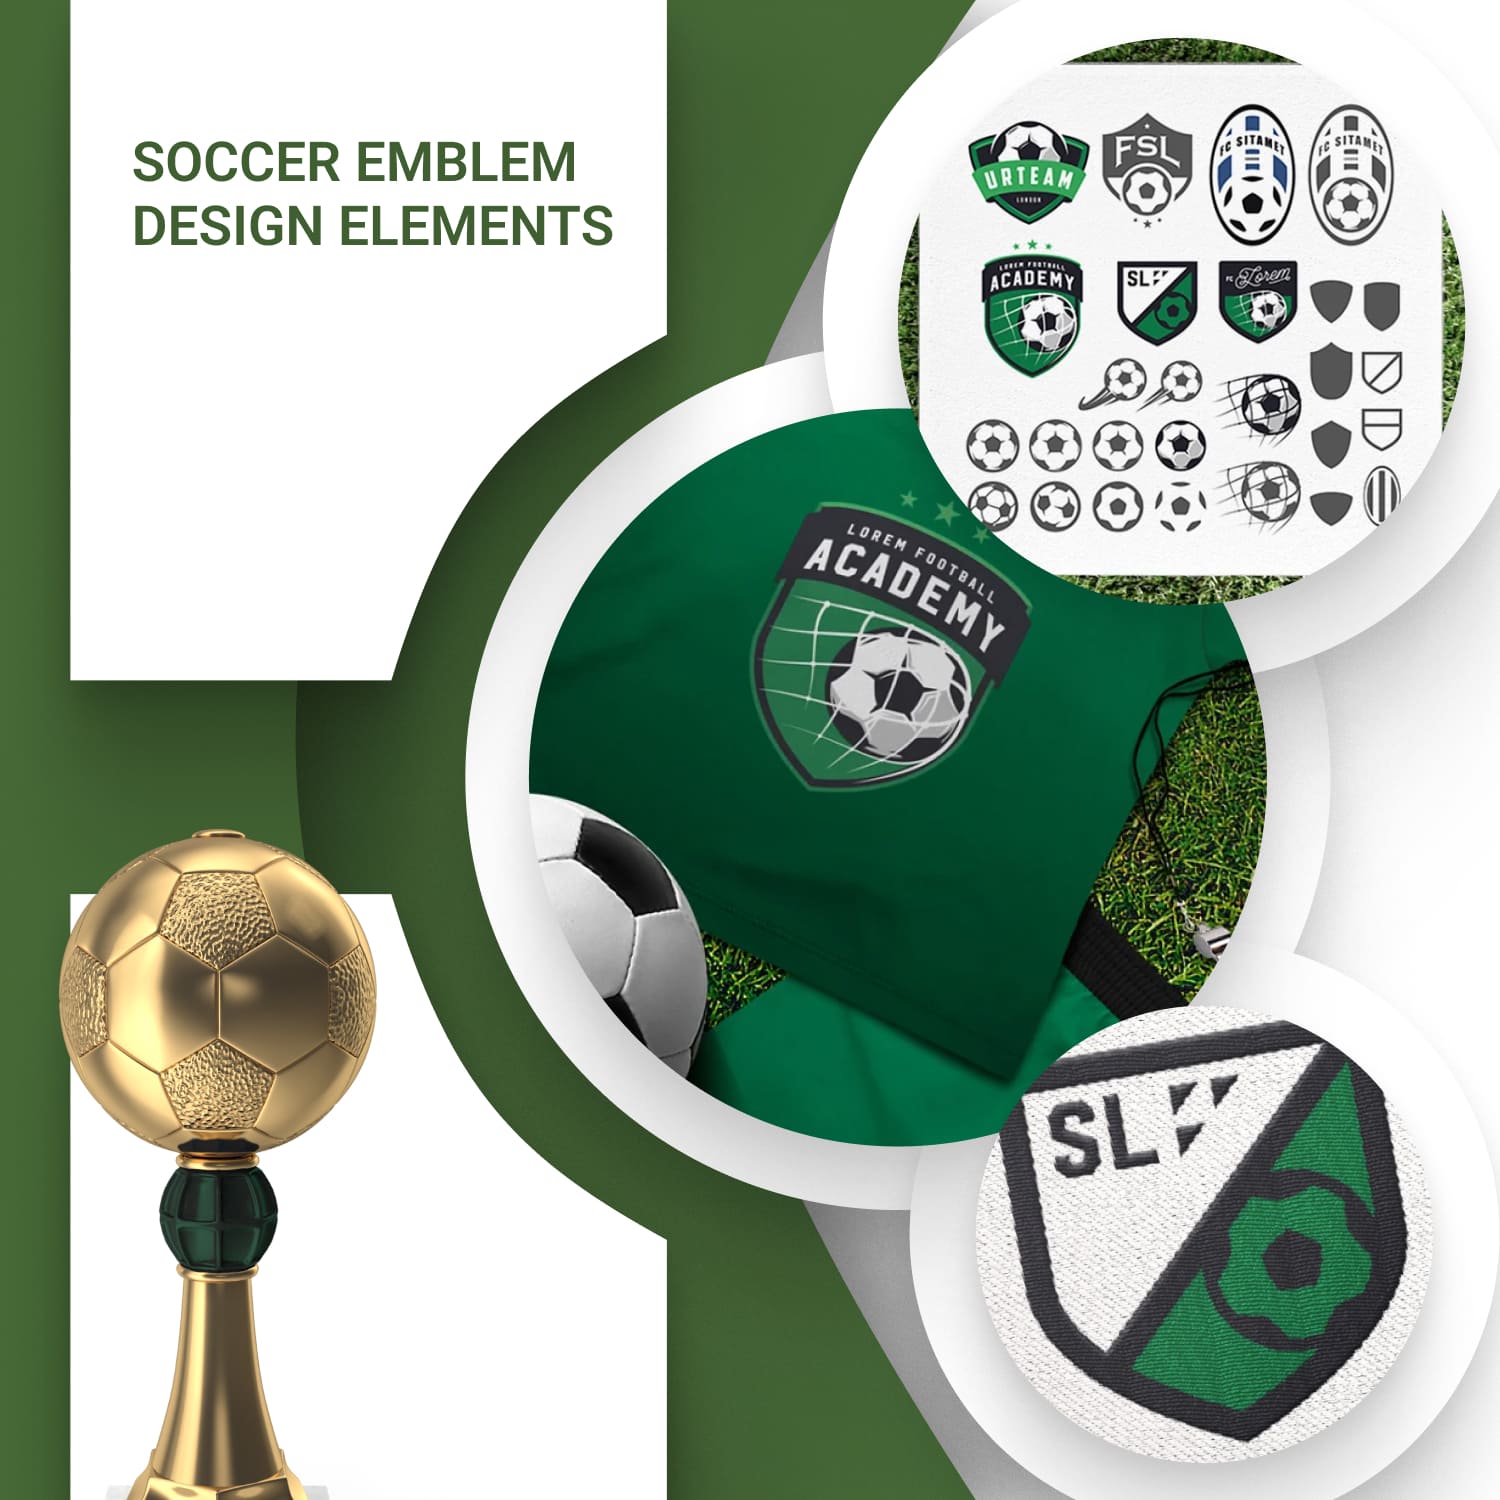 Soccer emblem design elements.